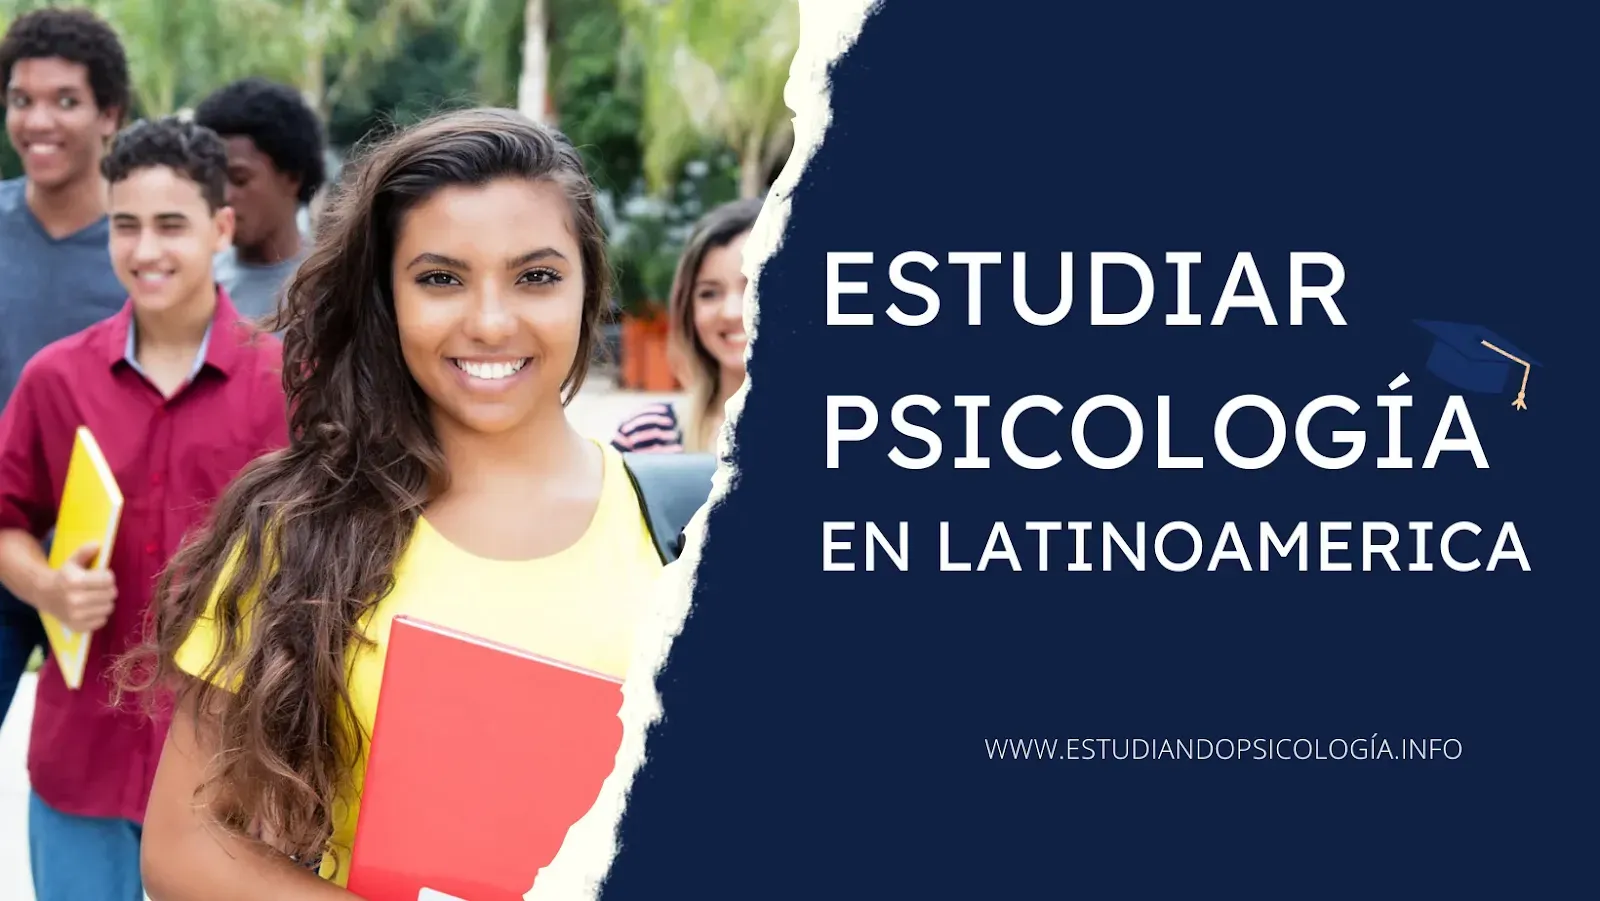 ¿Es buena idea estudiar psicología en latinoamérica?